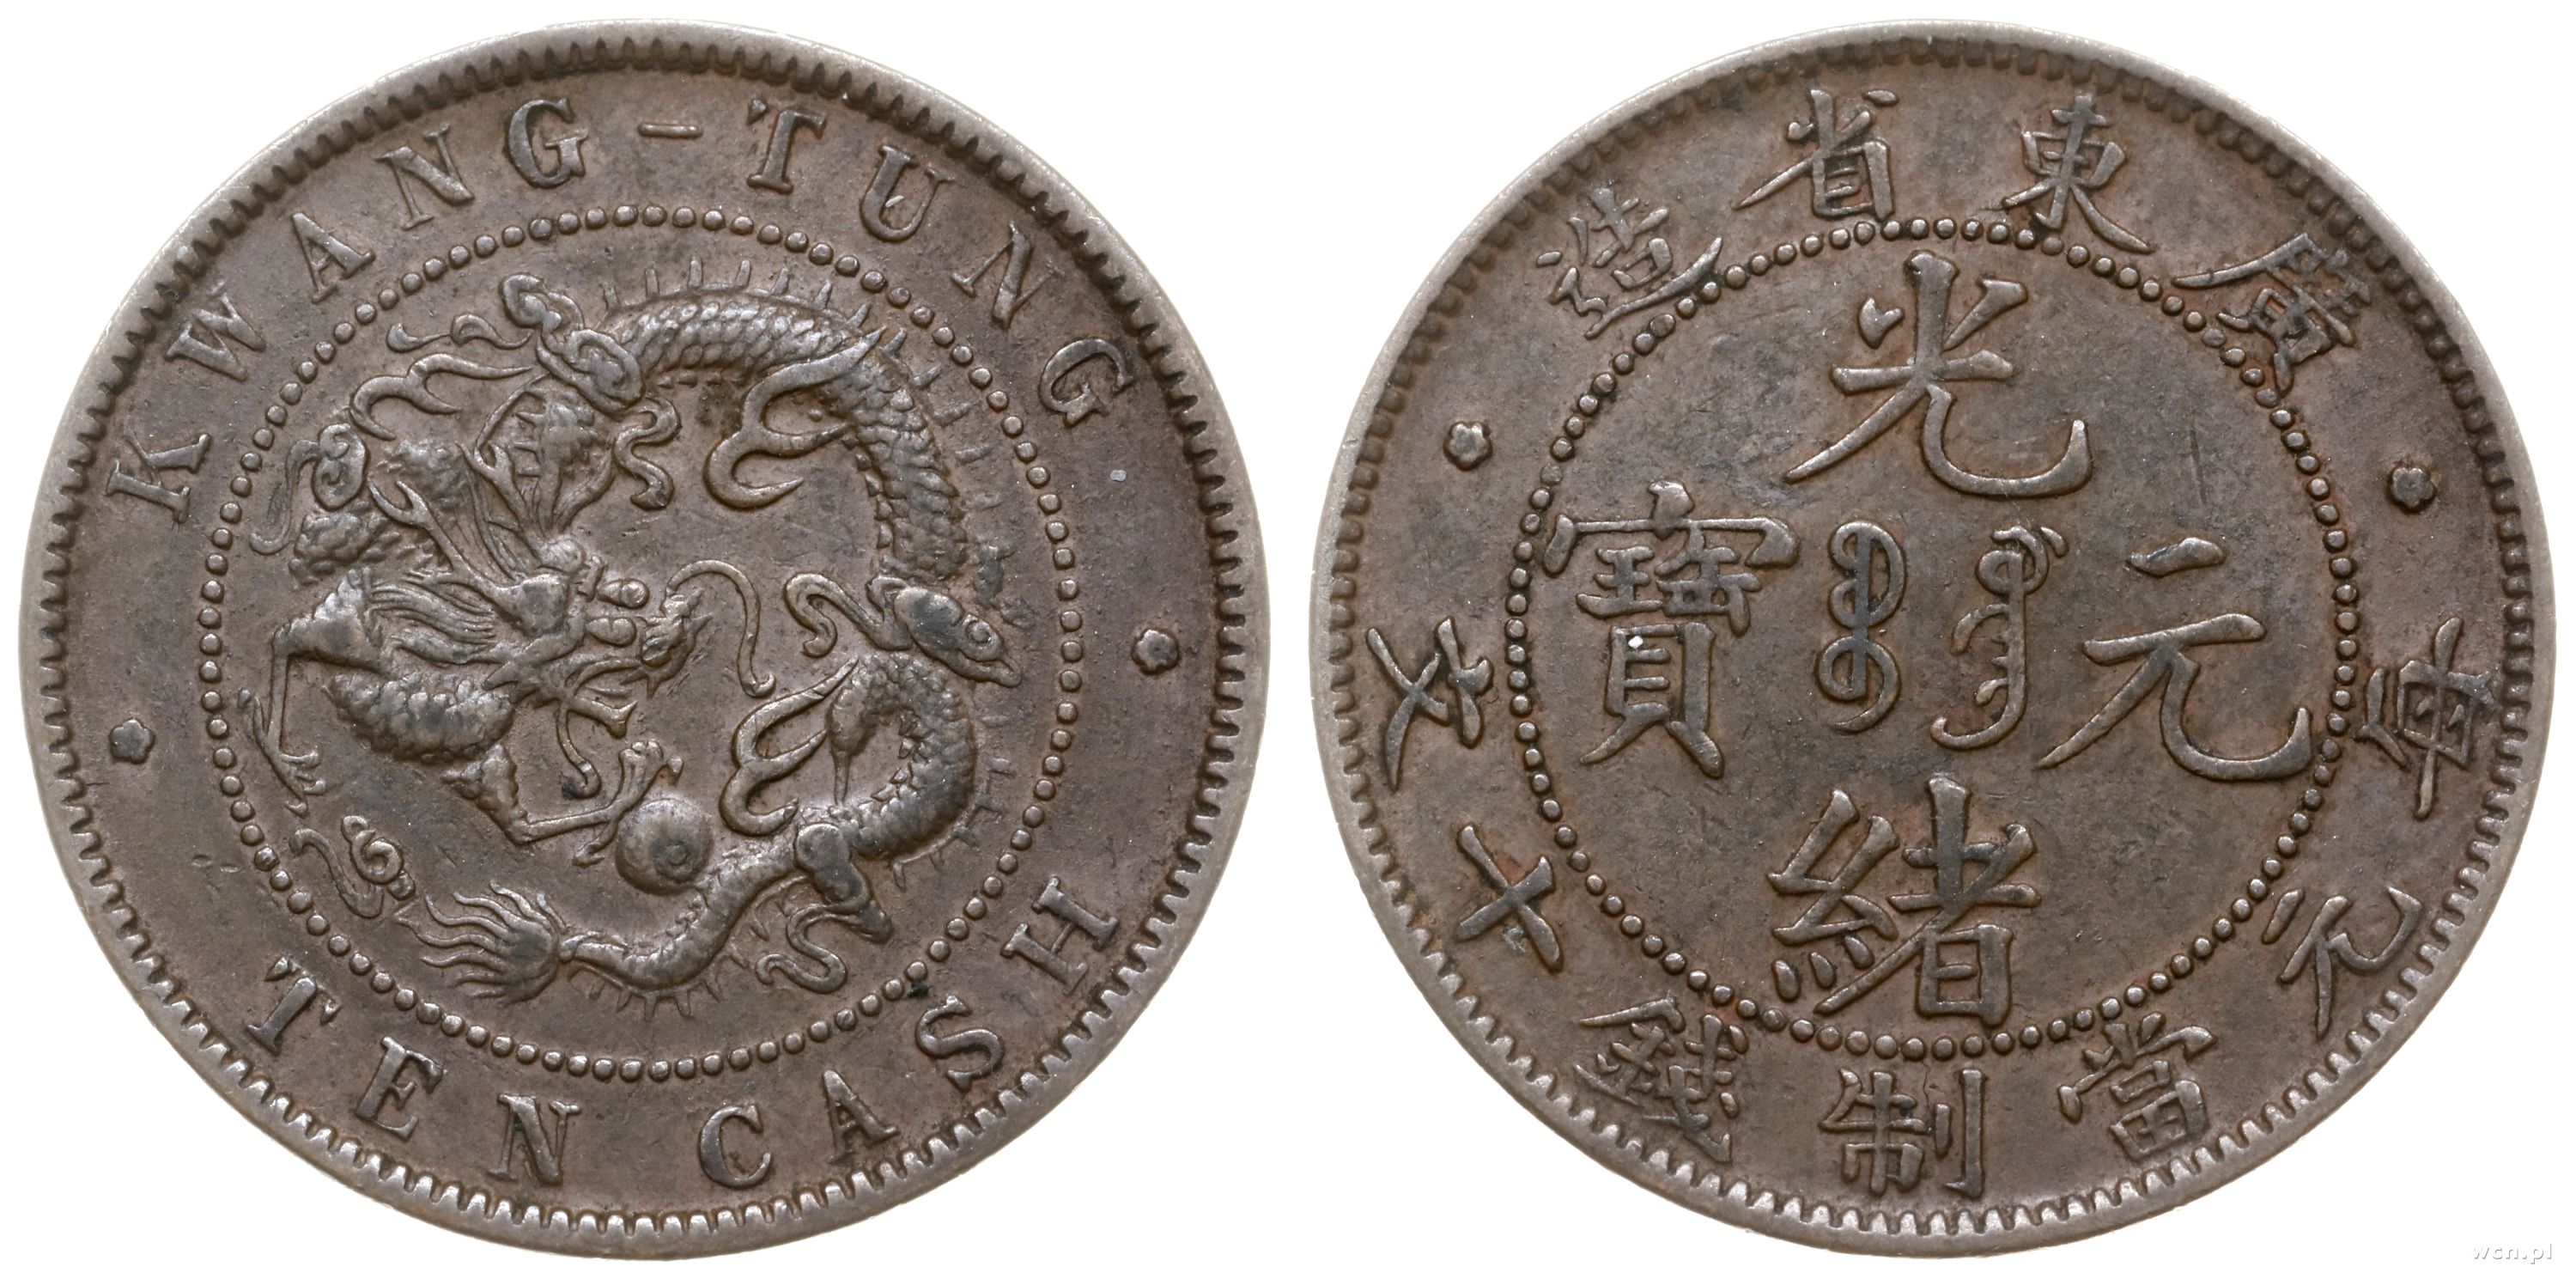 Y 45 1. 1 Tael китайская народная Республика серебро. Монеты 1 доллар Китая. 1 Серебряный доллар Китай. Anhwei монета.